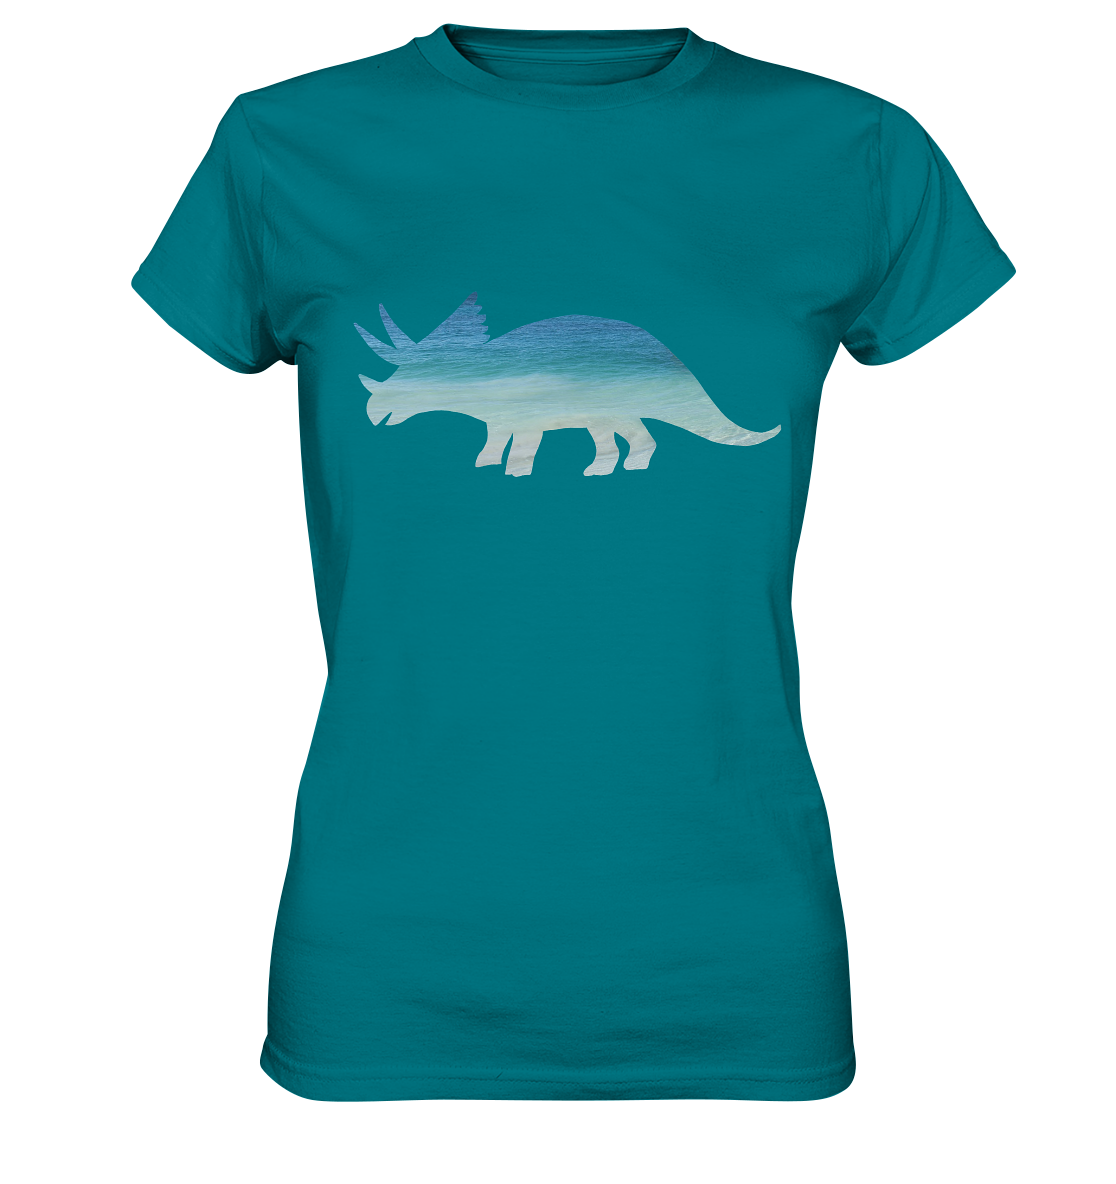 Damen T-Shirt "Triceratops am Strand": Individuelles Design für Dinosaurier-Freunde - Ladies Premium Shirt